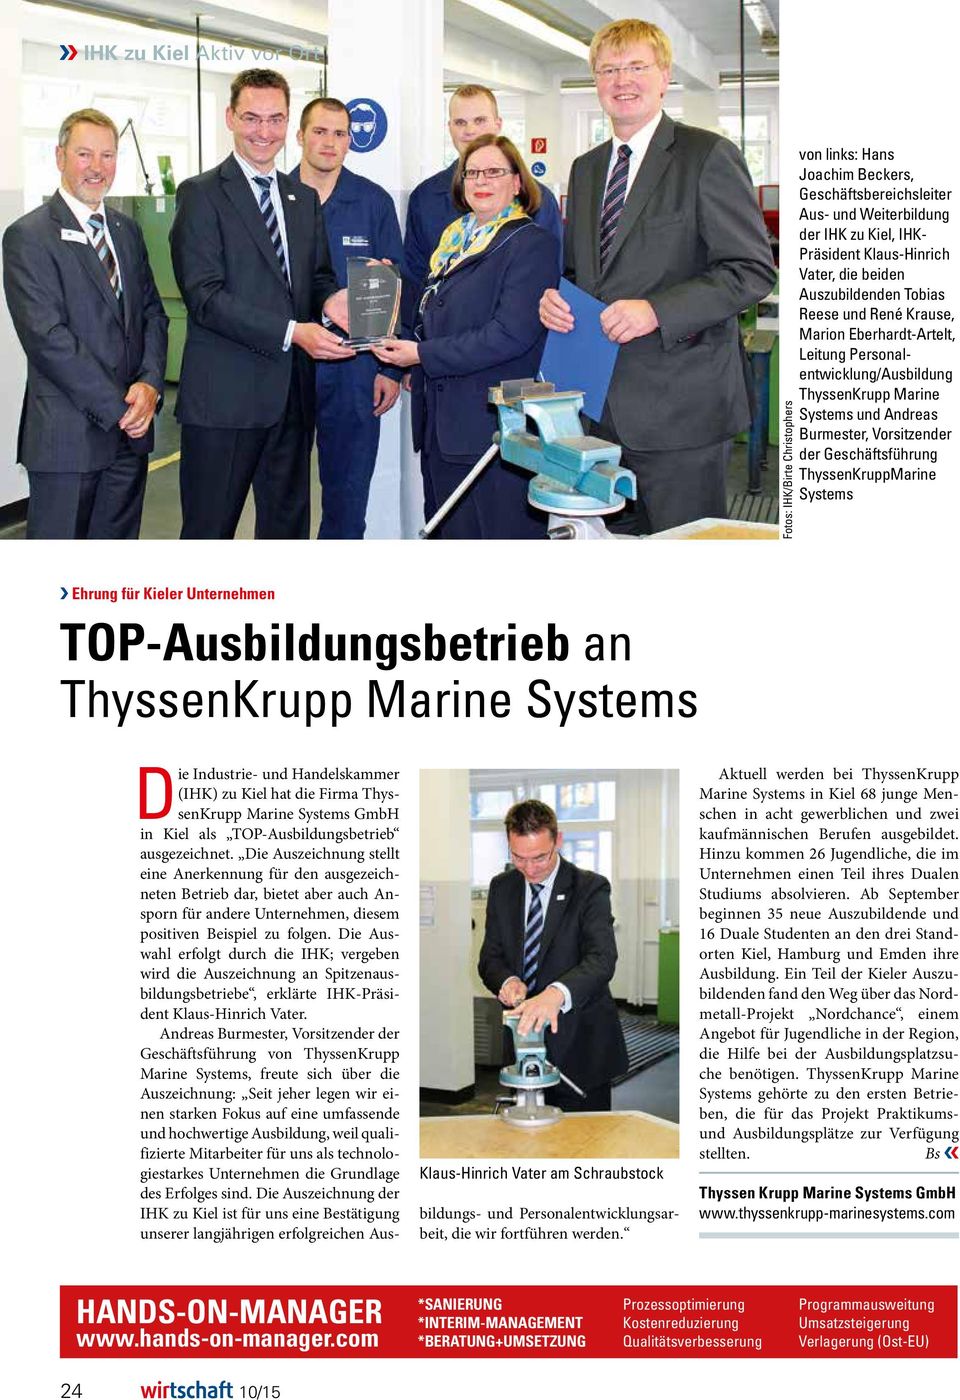 ThyssenKruppMarine Systems Ehrung für Kieler Unternehmen TOP-Ausbildungsbetrieb an ThyssenKrupp Marine Systems Die Industrie- und Handelskammer (IHK) zu Kiel hat die Firma ThyssenKrupp Marine Systems